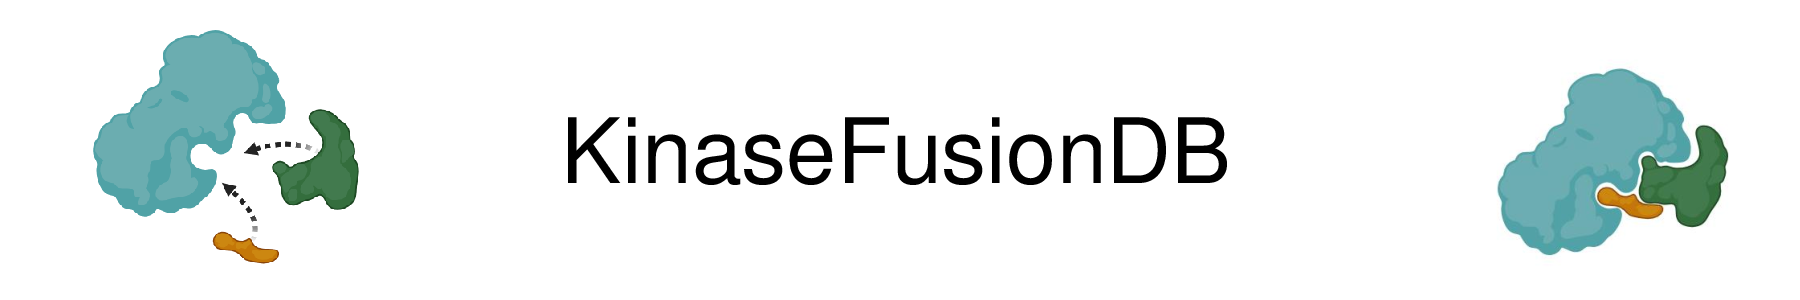 KinaseFusionDB Logo